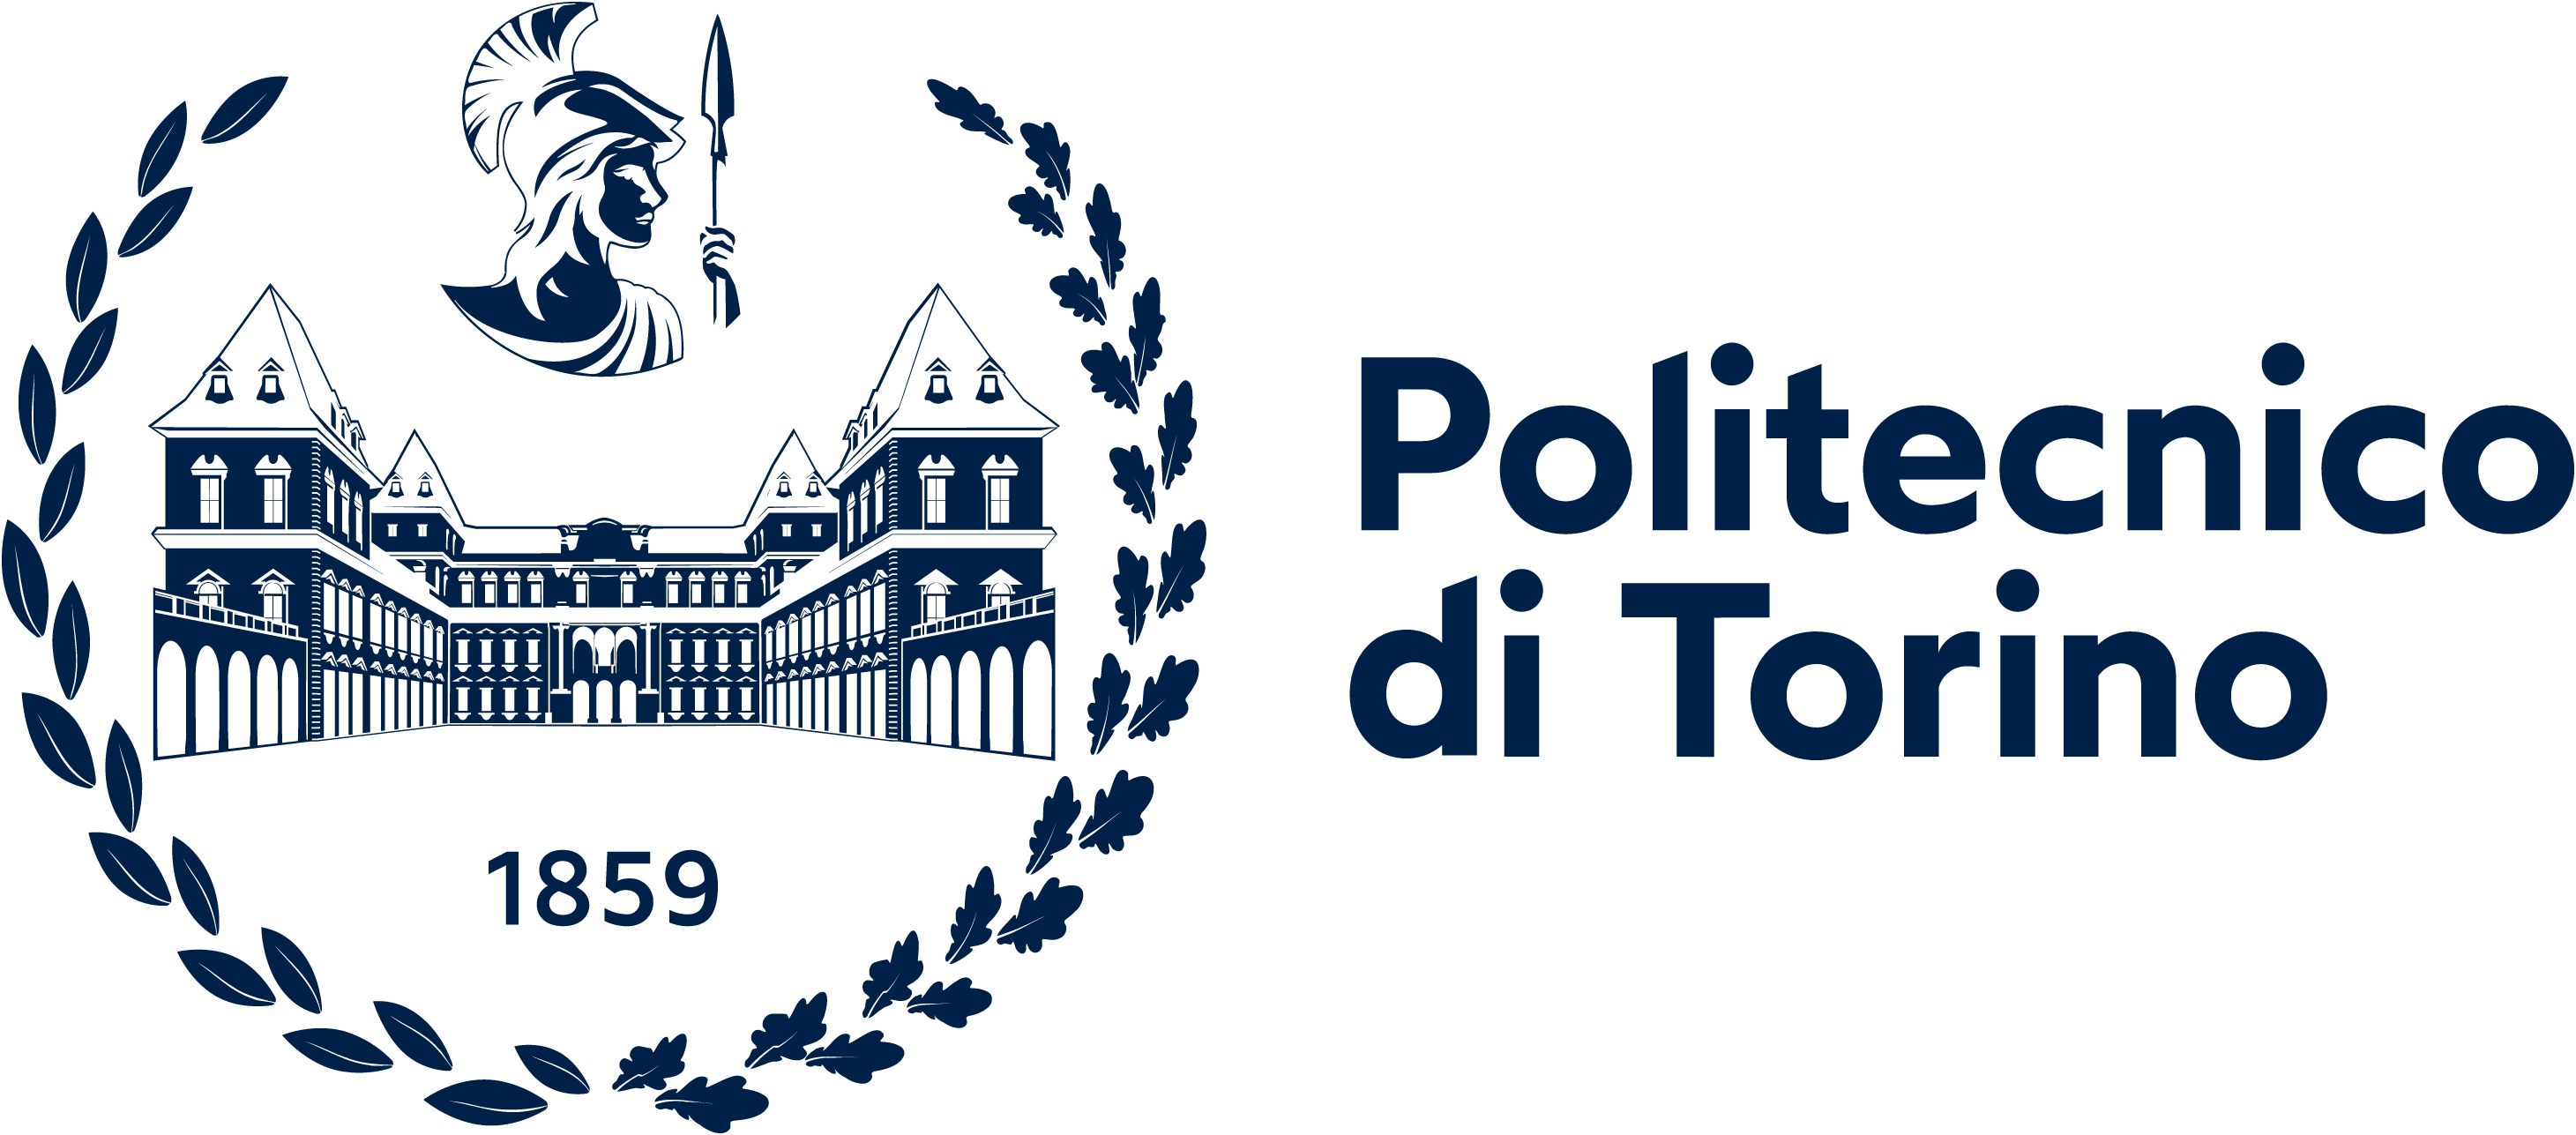 Politecnico_di_Torino